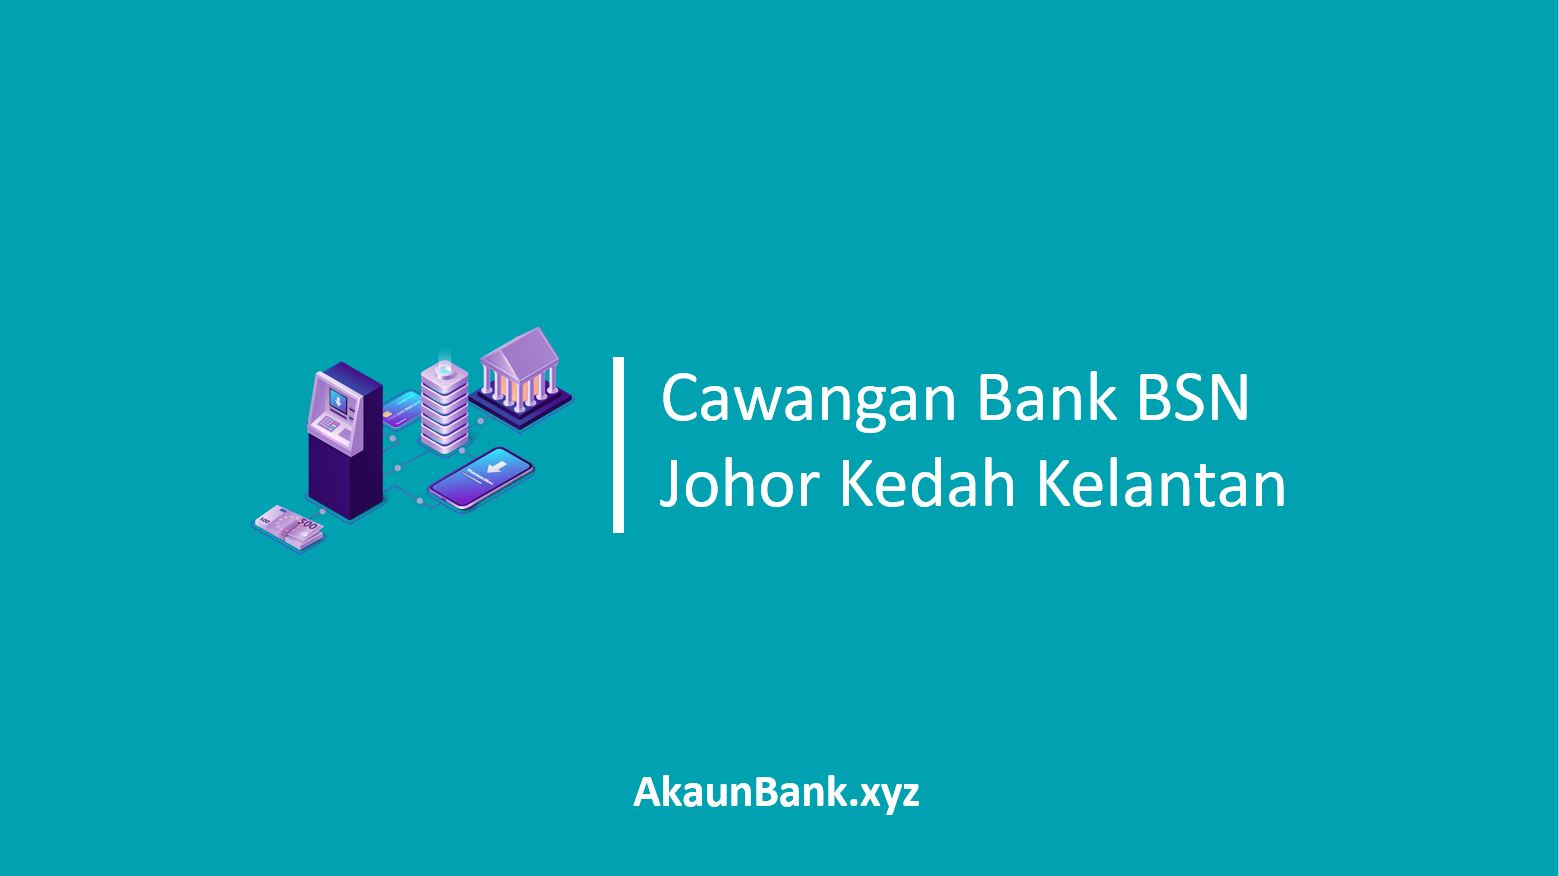 Cawangan Bank BSN Johor Kedah Kelantan